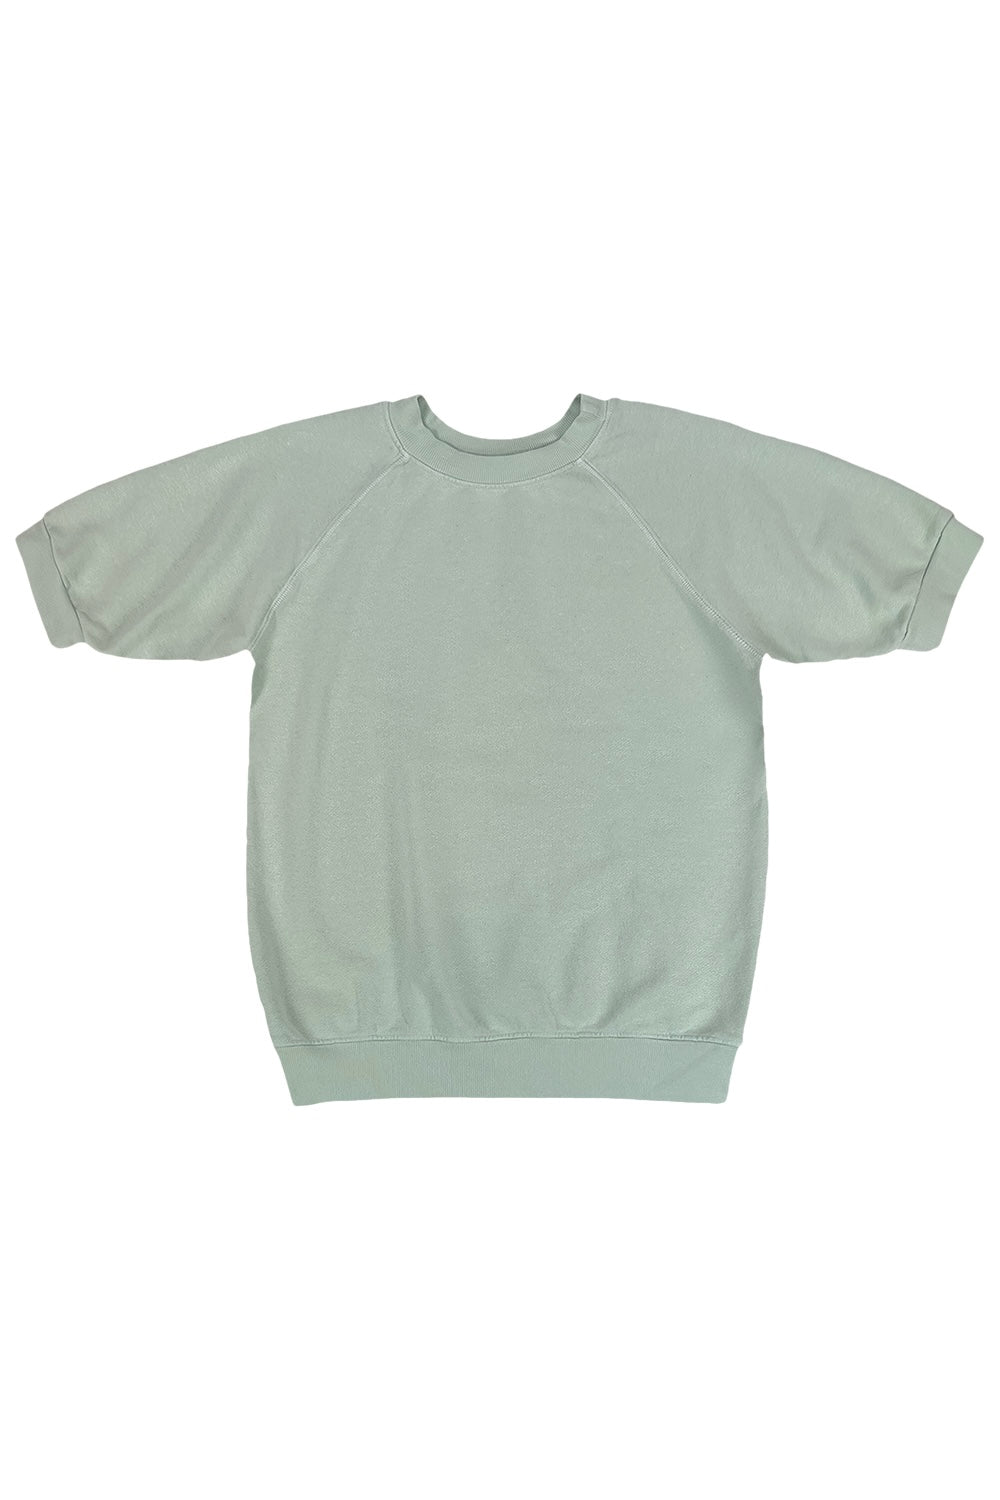 Short Sleeve Raglan Fleece Sweatshirt | Jungmaven Hemp Clothing & Accessories / Color: Seafoam Green